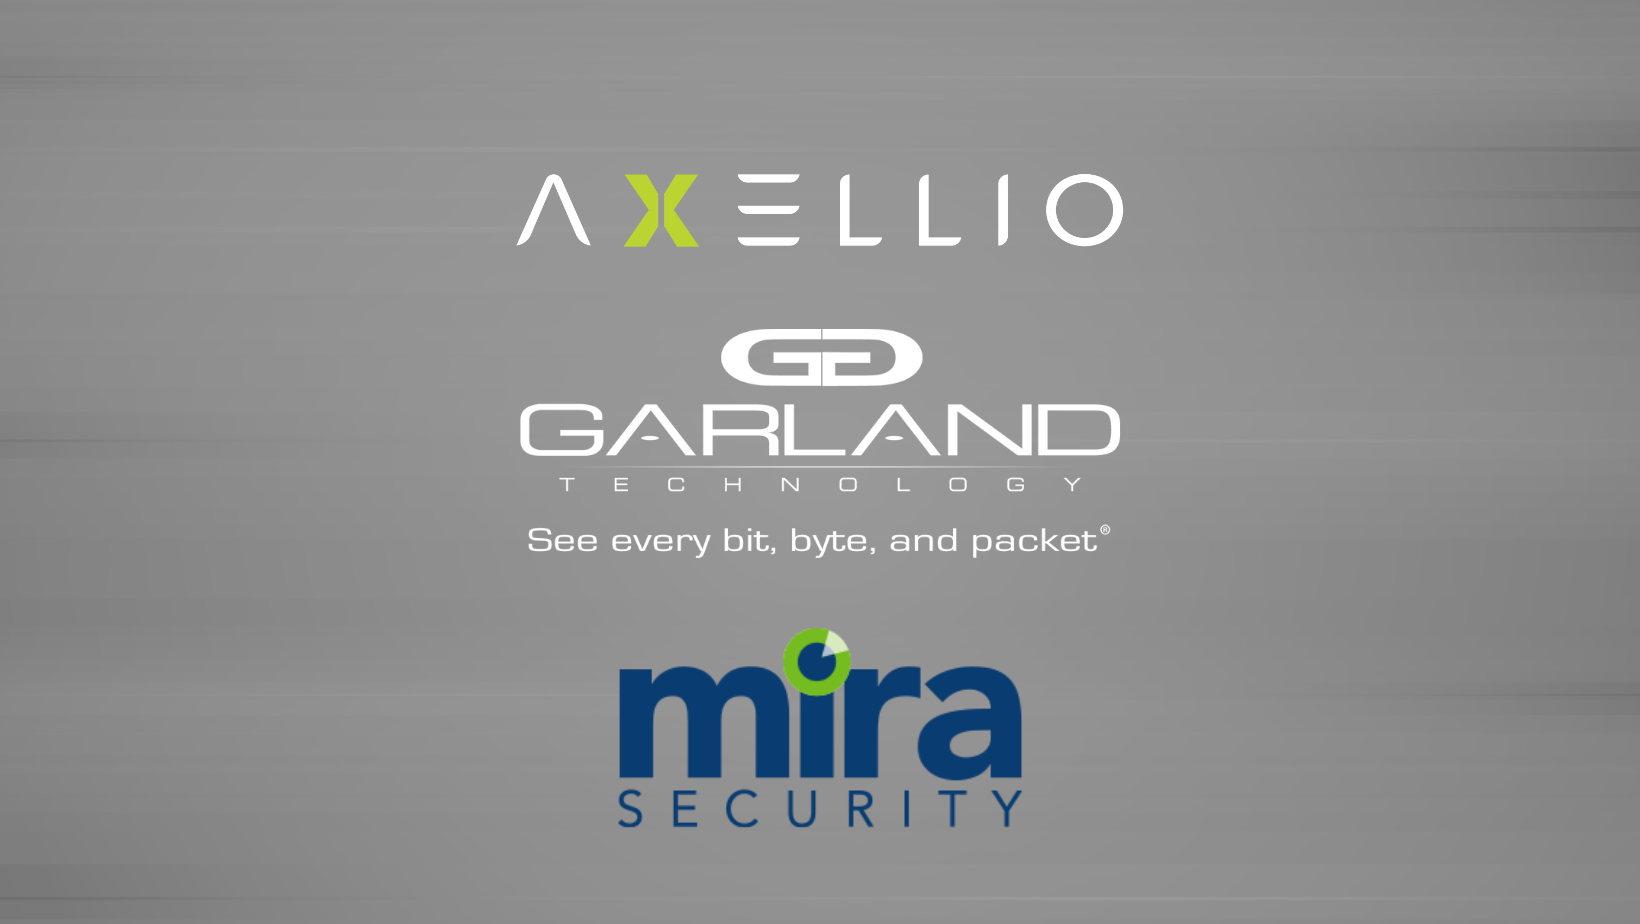 Axellio Mira Security Garland Technology